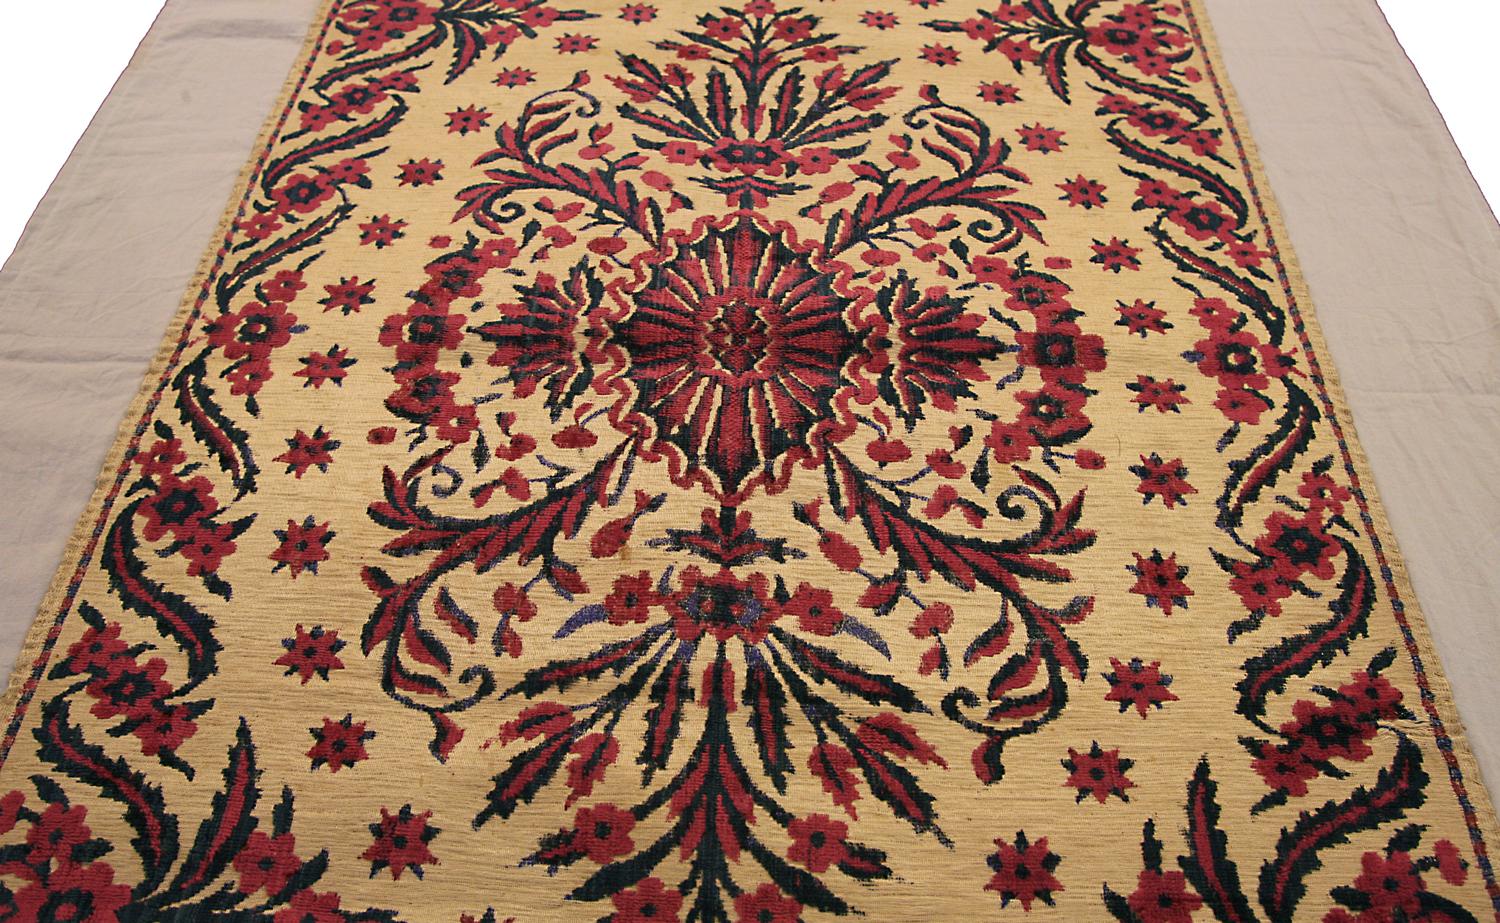 Dies ist eine seltene antike Ottomane Textil gewebt in der Türkei während des 19. Jahrhunderts, die 118 x 55CM in der Größe misst. Das Design dreht sich um ein florales Medaillon in der Mitte, das auf einem beigen Hintergrund steht und von